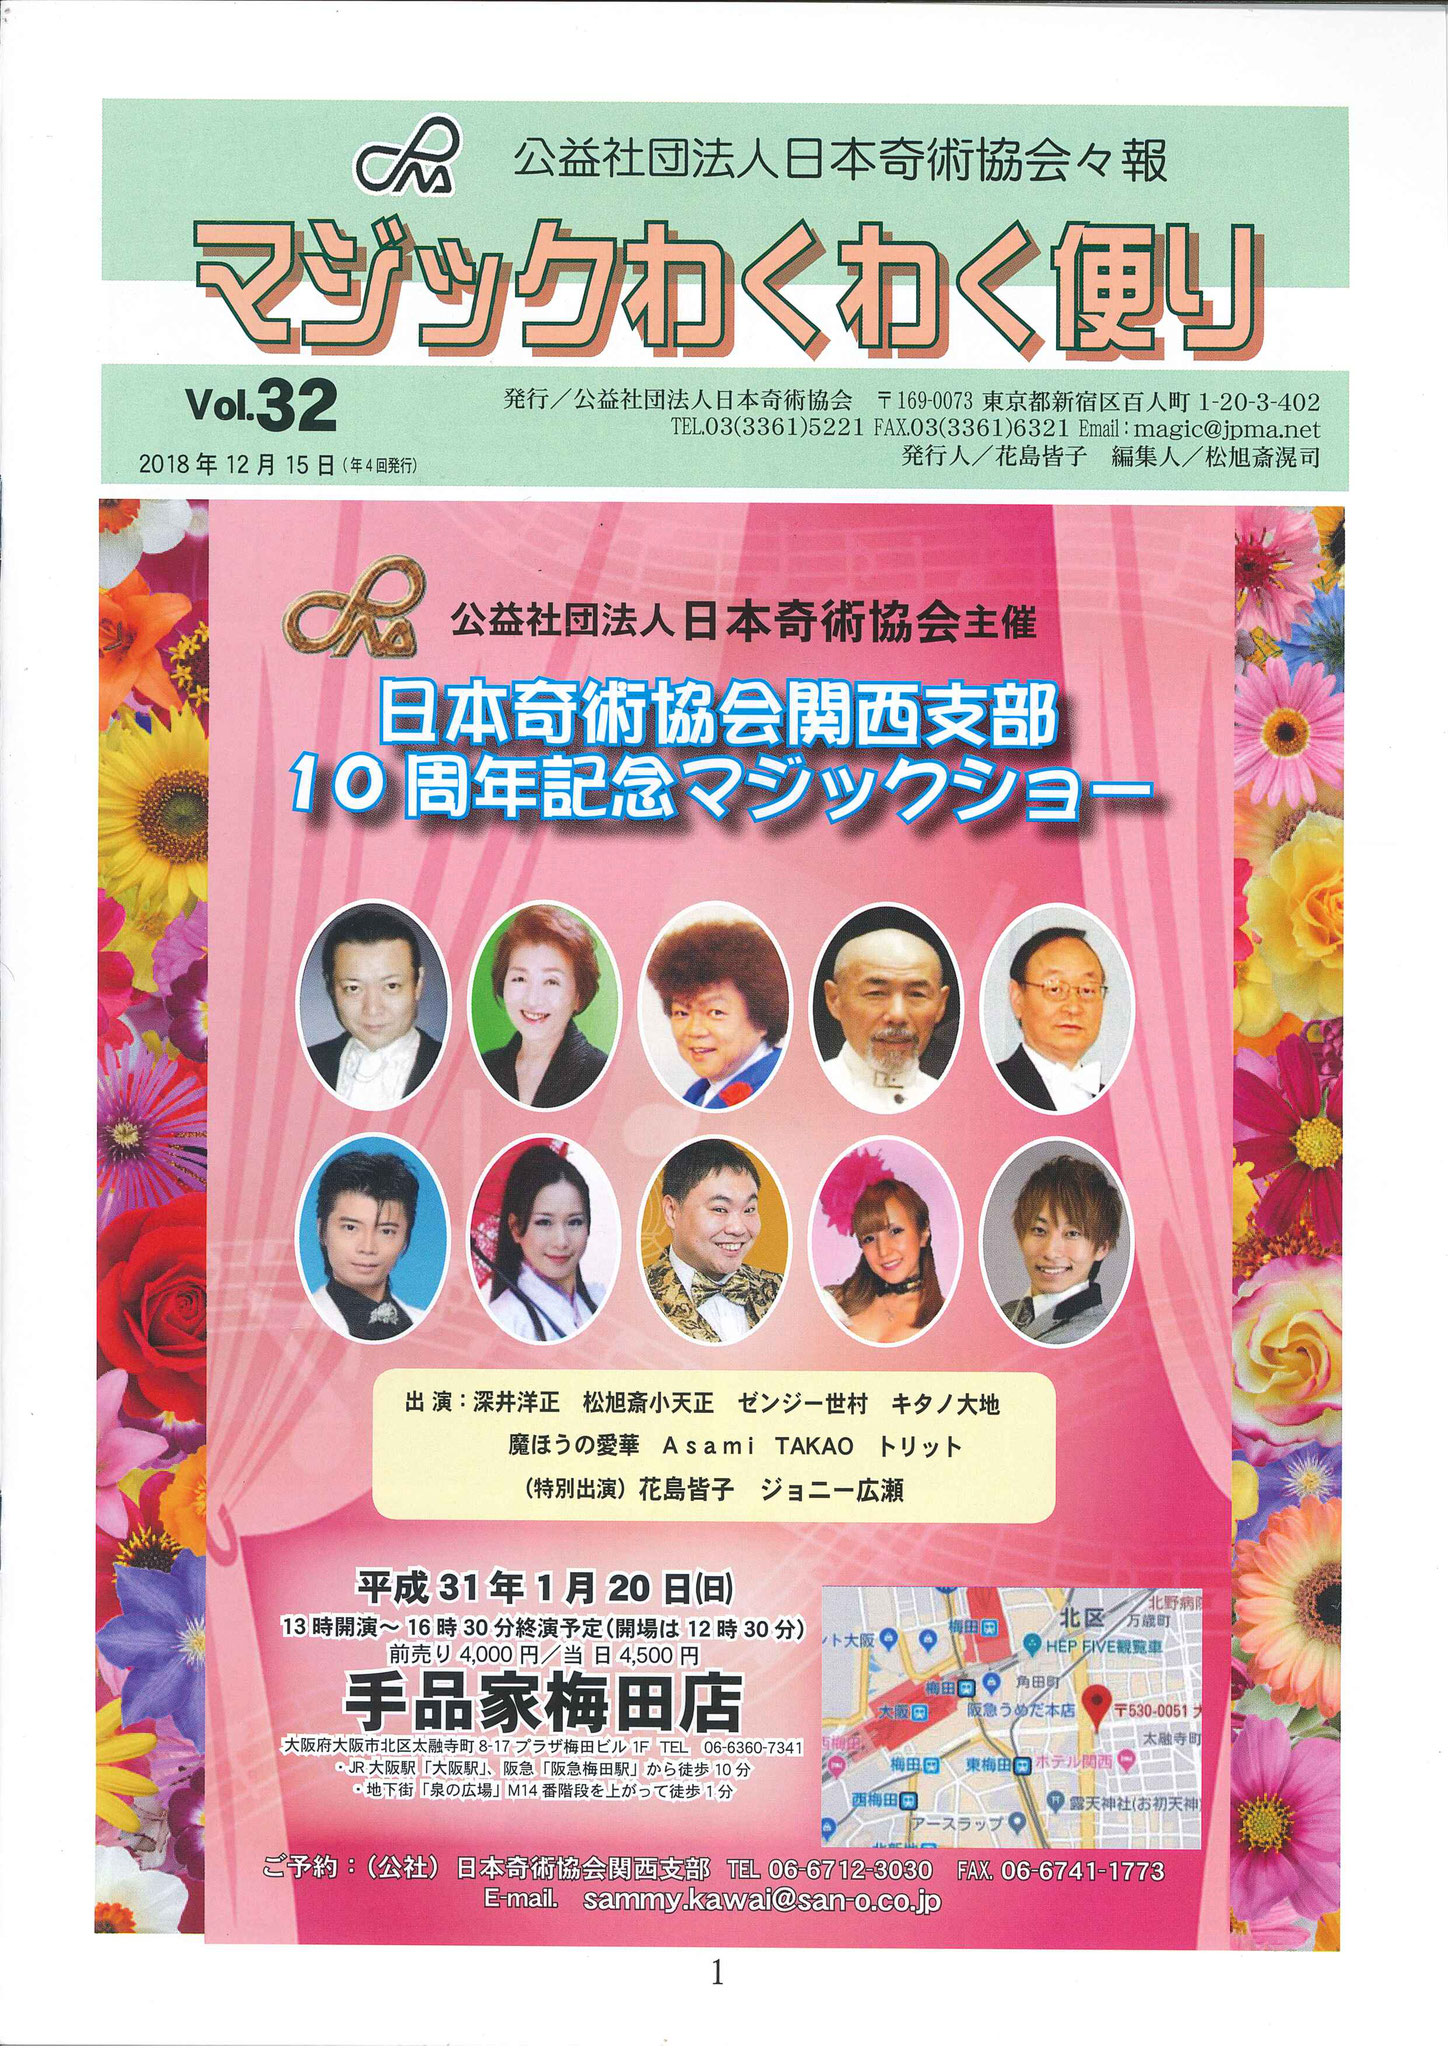 マジックわくわく便り№32-1(公社)日本奇術協会 関西支部10周年マジックショー